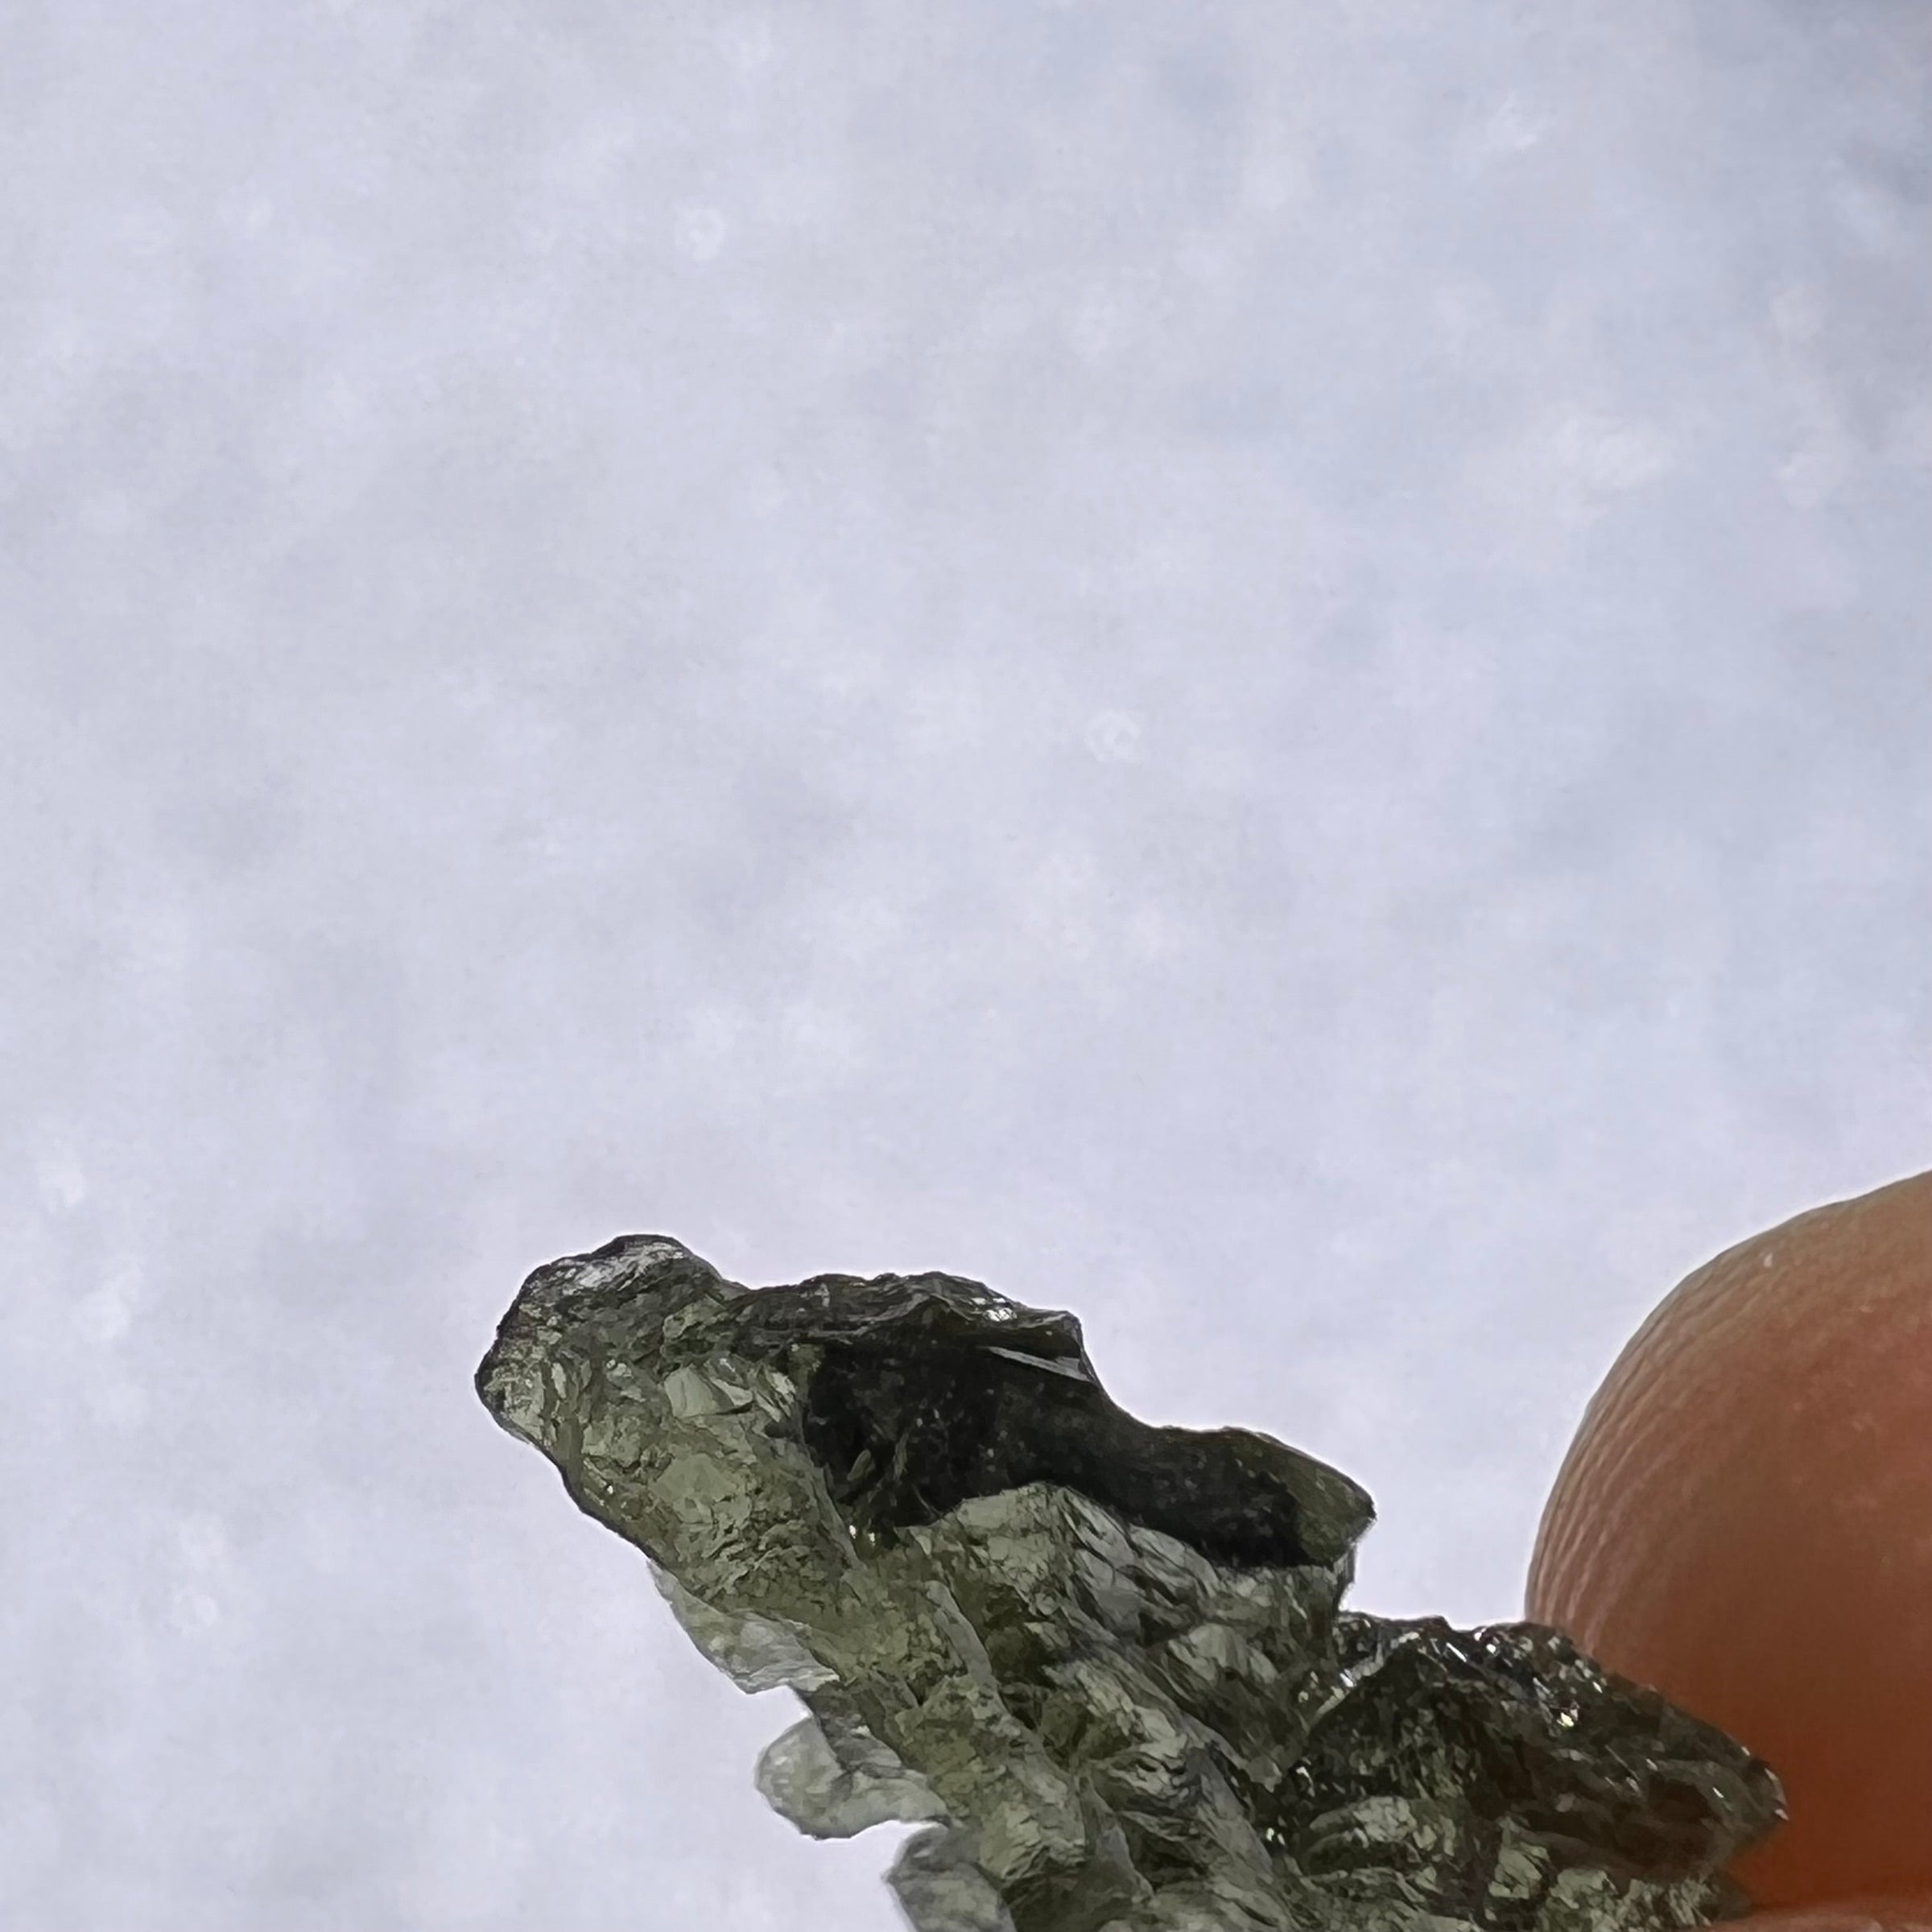 Besednice Moldavite 0.78 grams #425-Moldavite Life